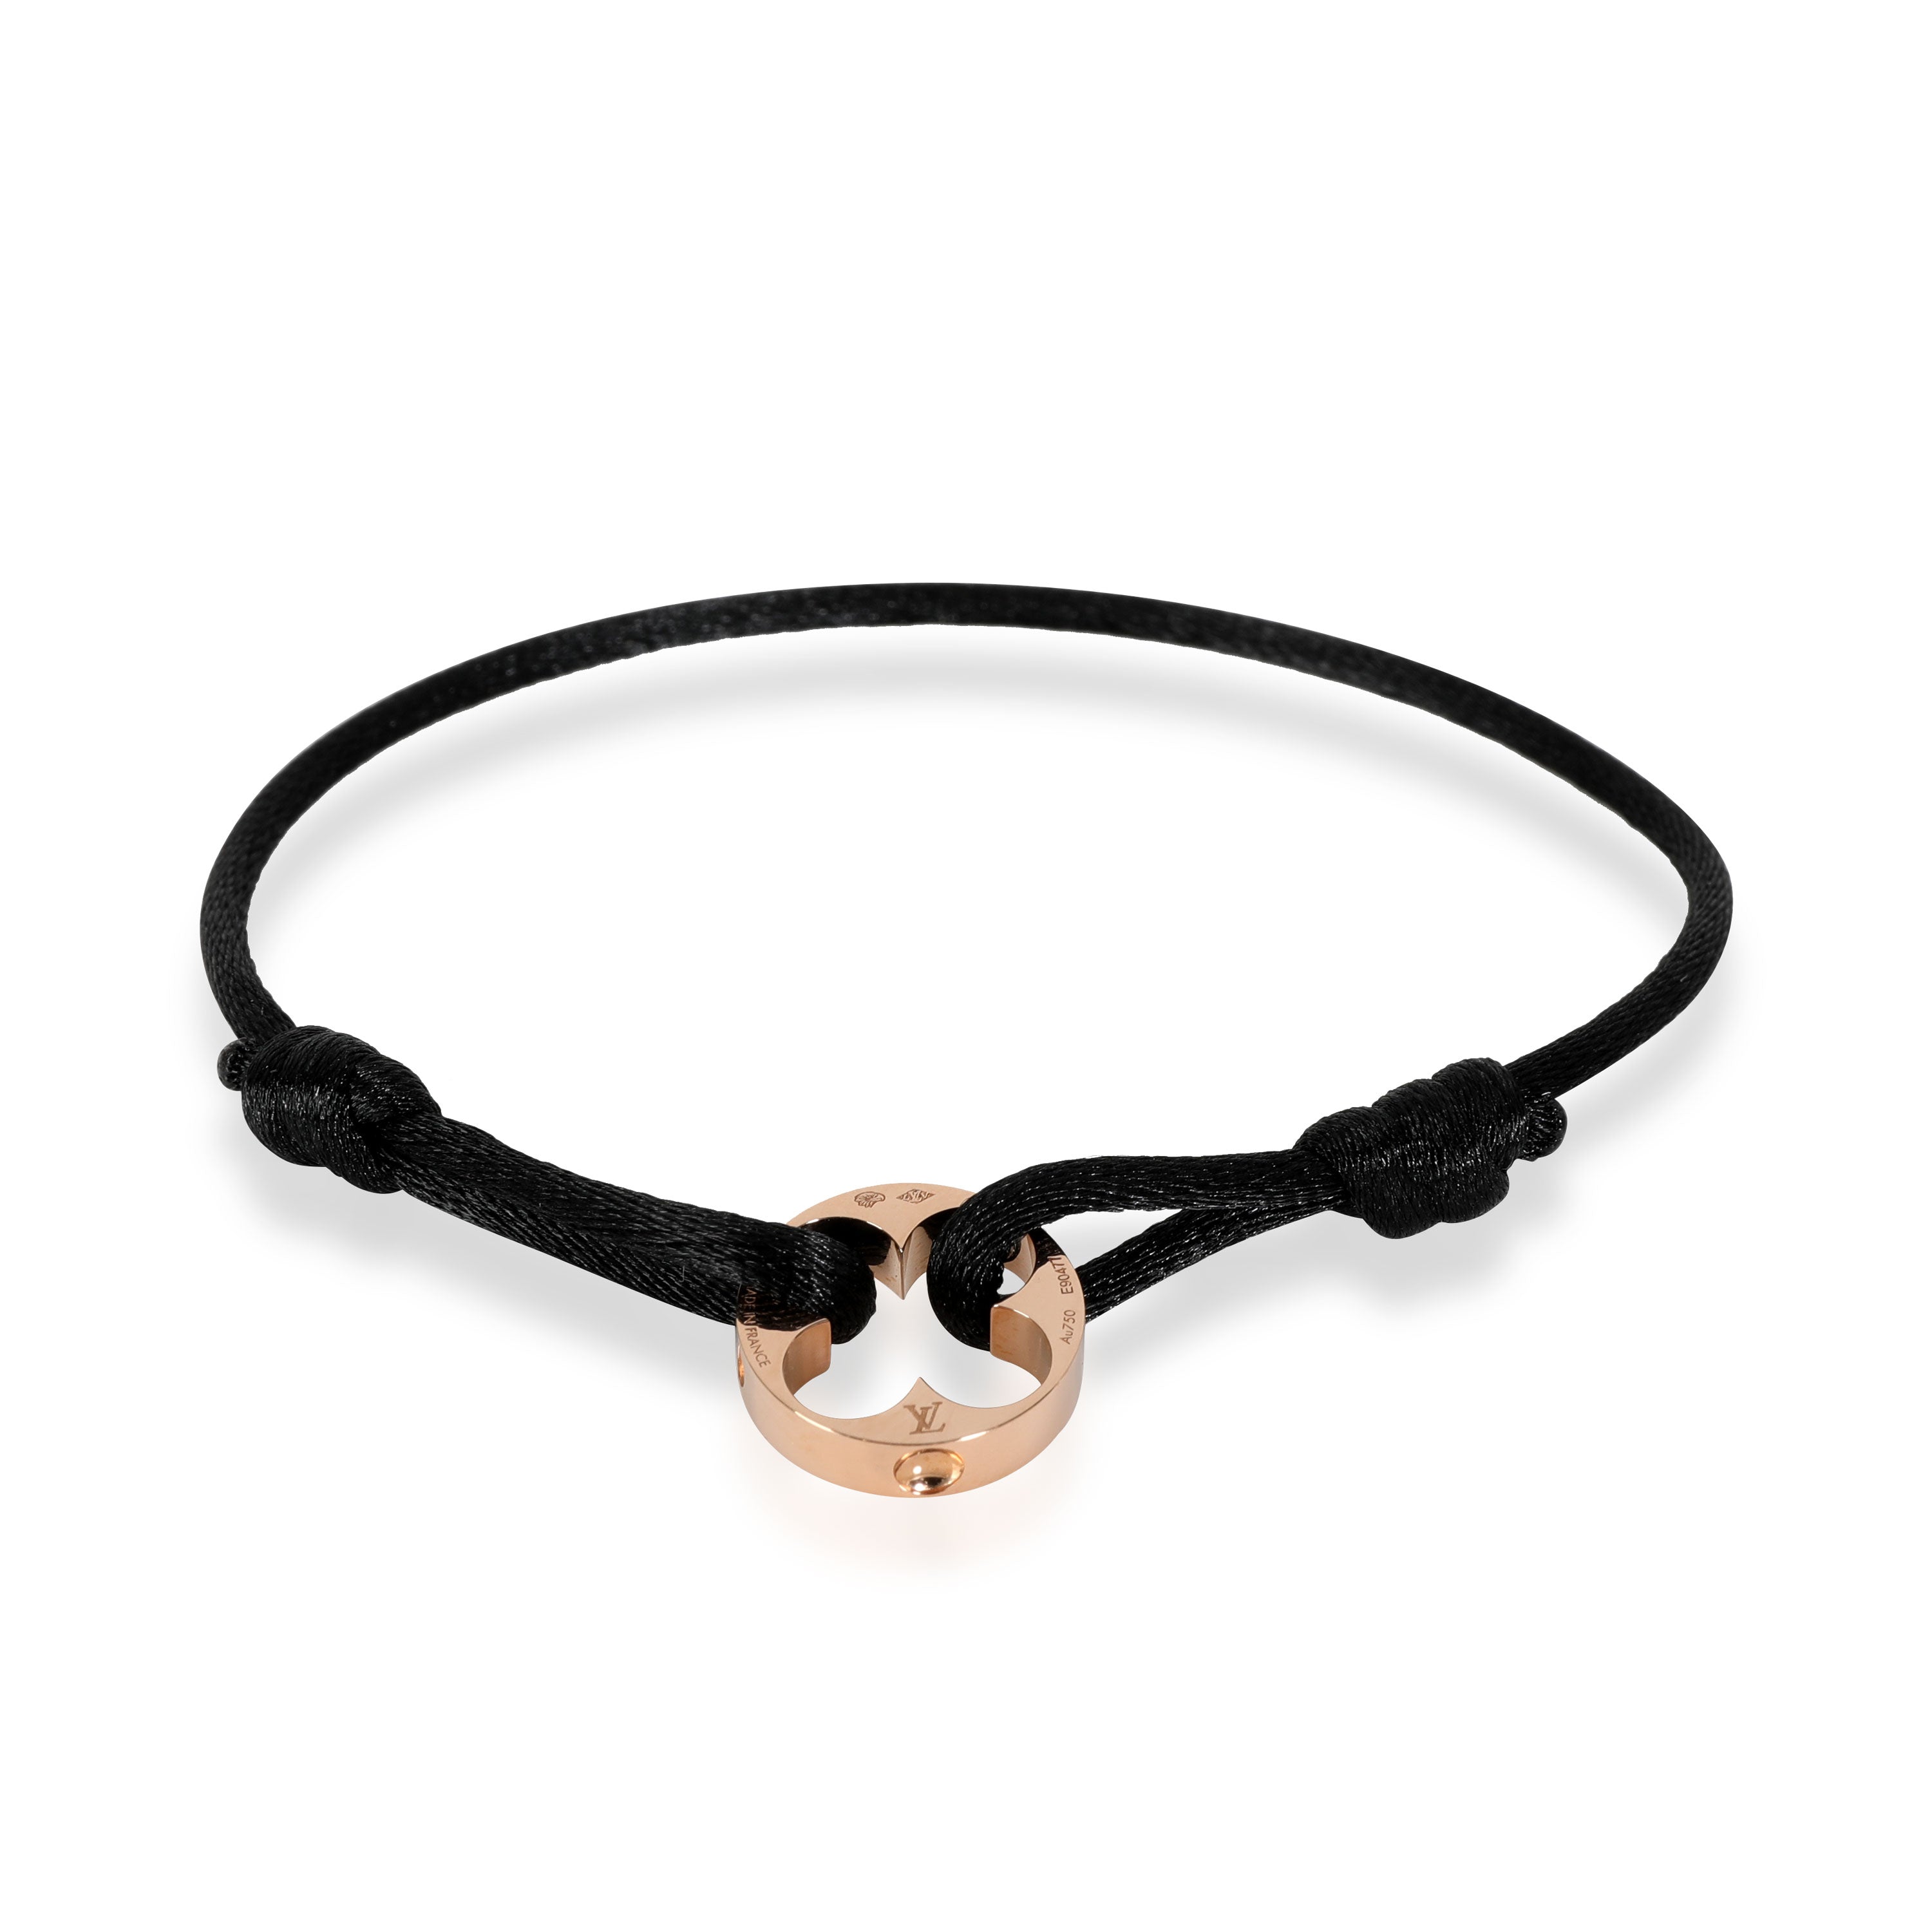 Louis Vuitton Empreinte Bracelet in 18k Rose Gold, myGemma